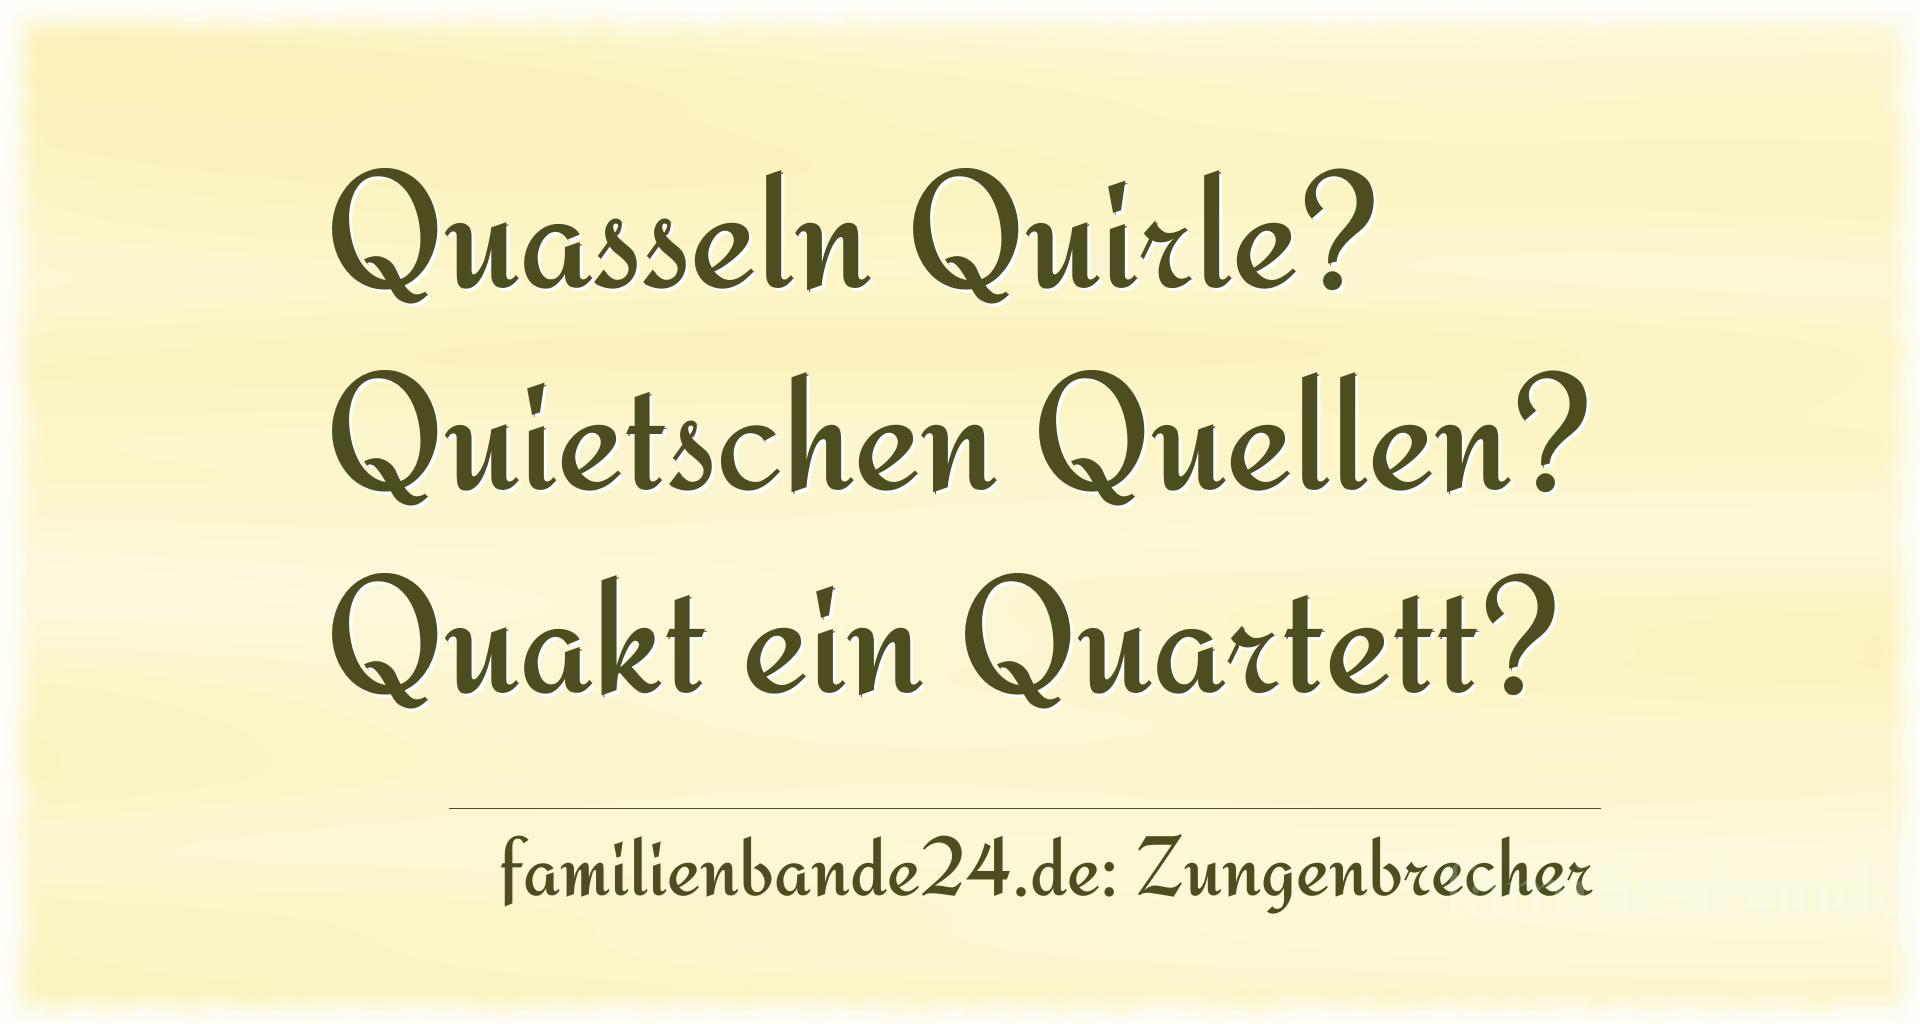 Zungenbrecher Nr. 738: Quasseln Quirle? Quietschen Quellen? Quakt ein Quartett?